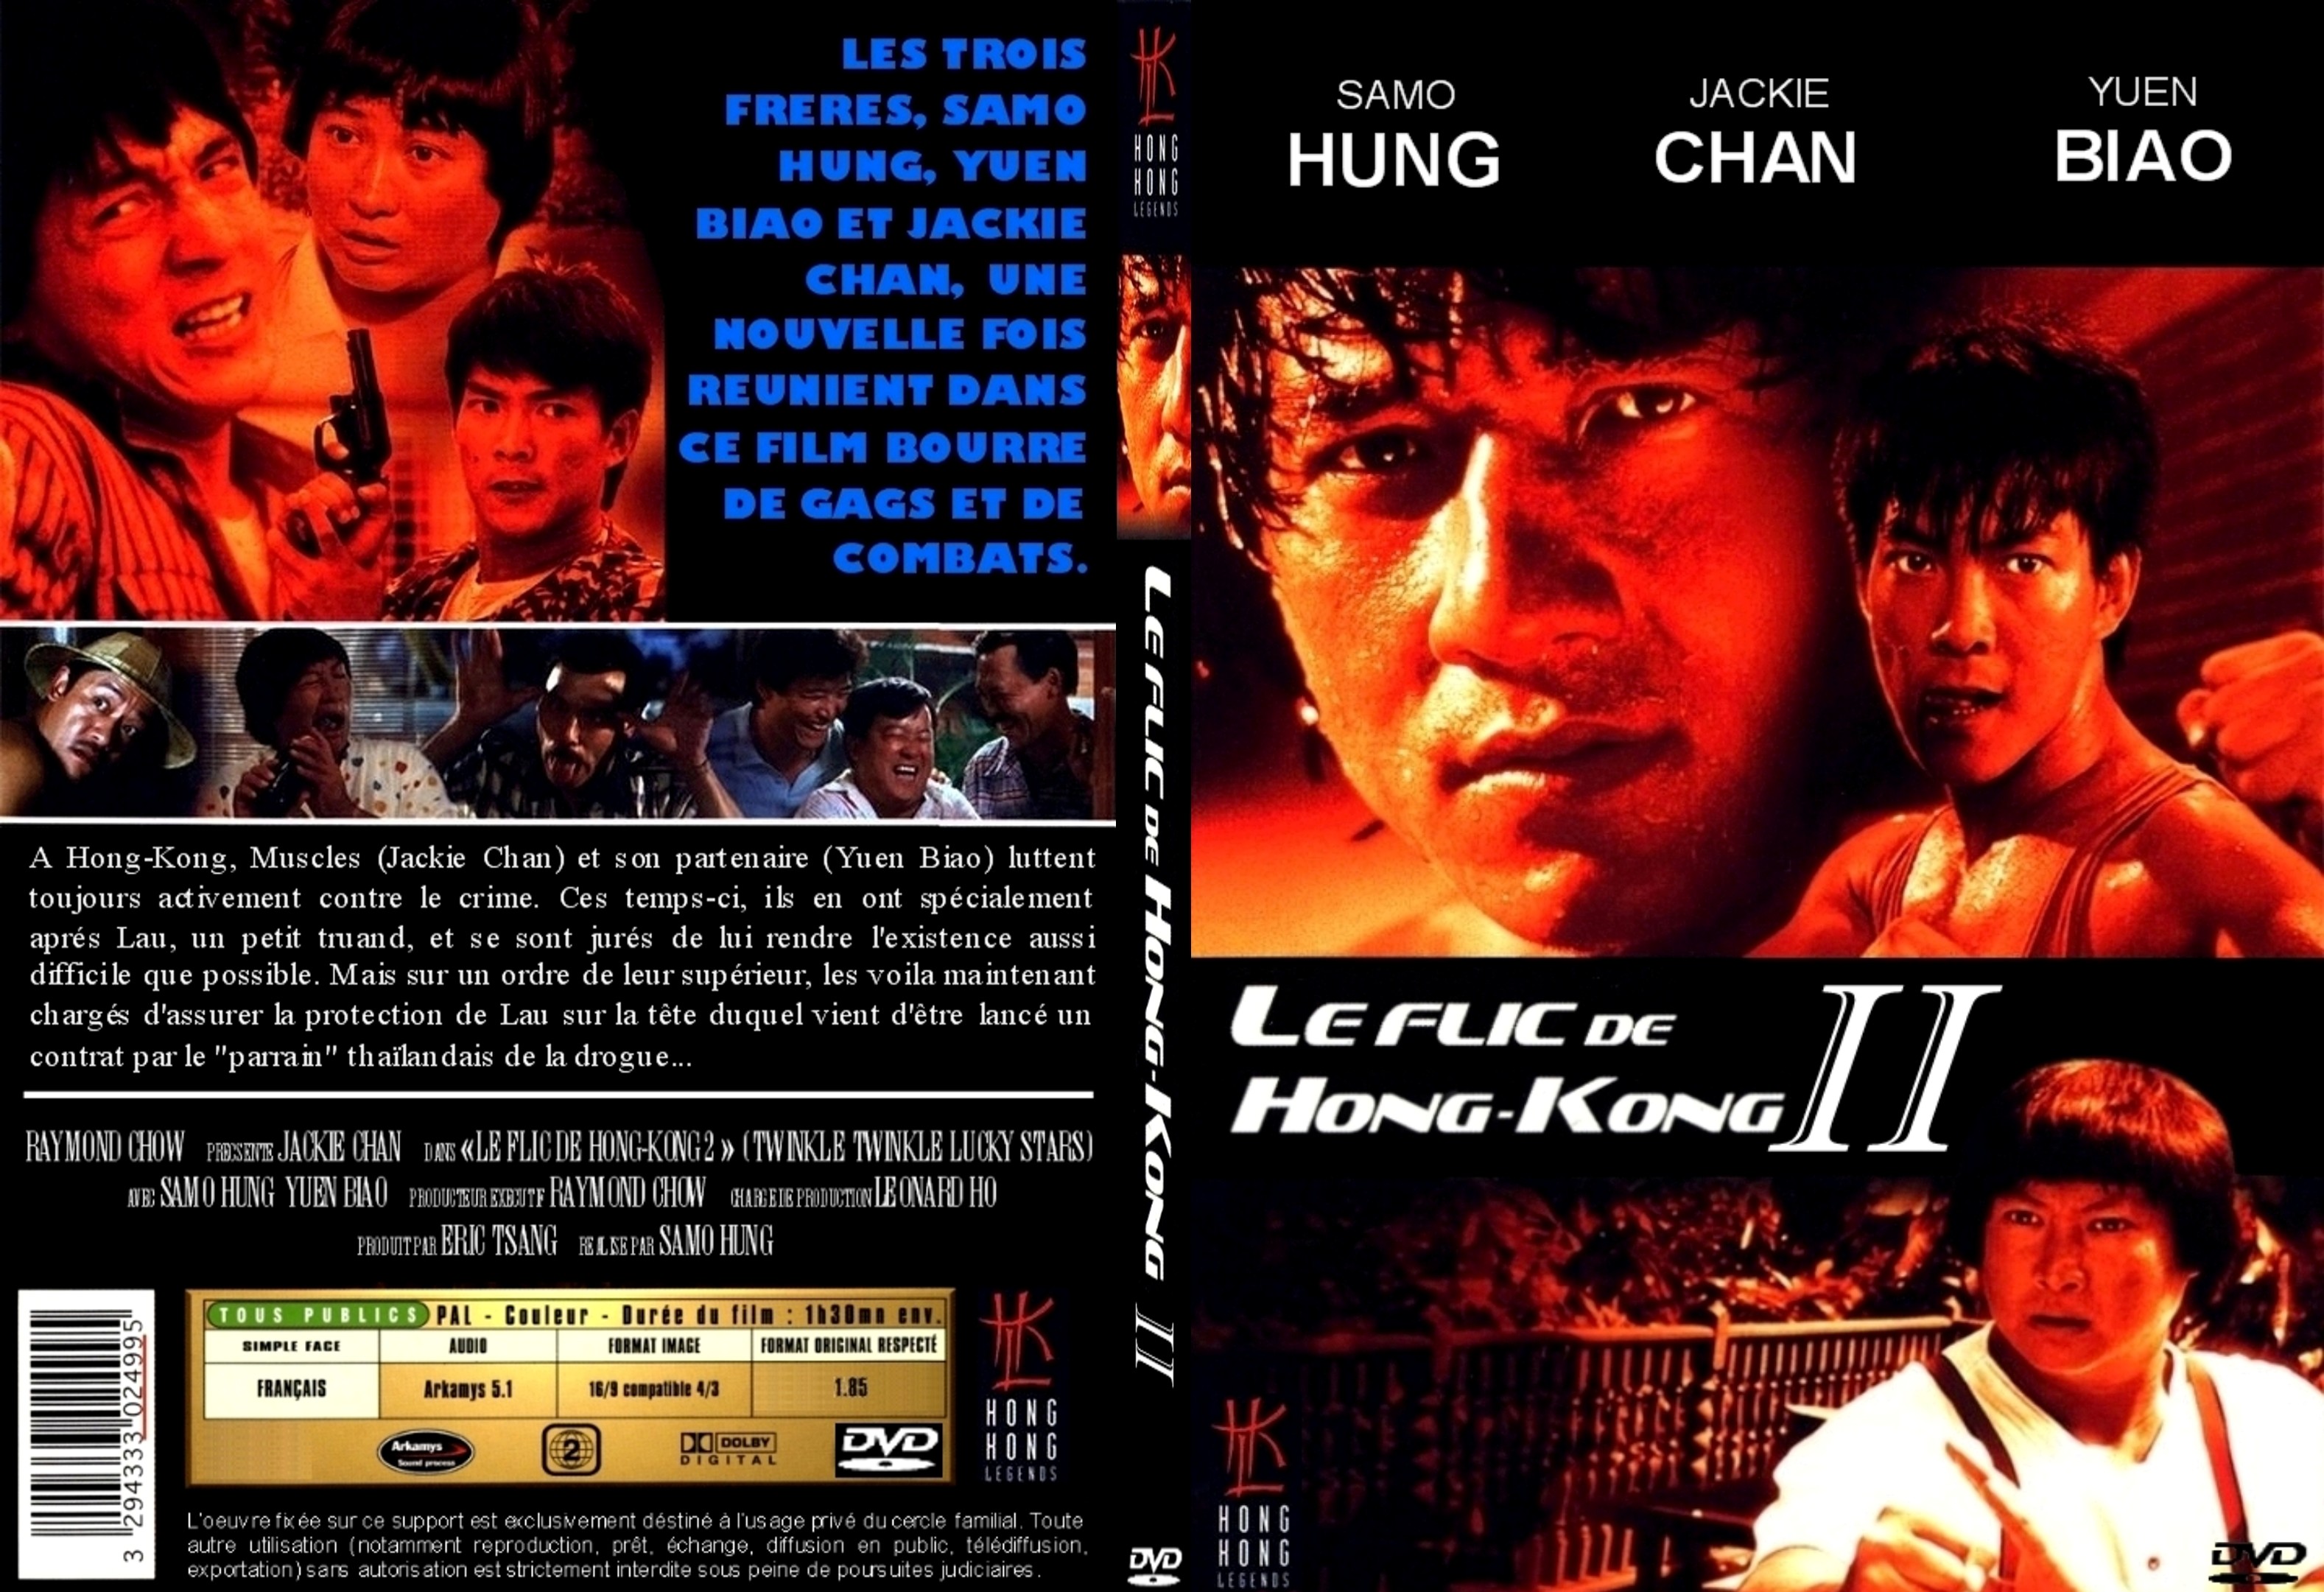 Jaquette DVD Le flic de hong kong 2 custom - SLIM